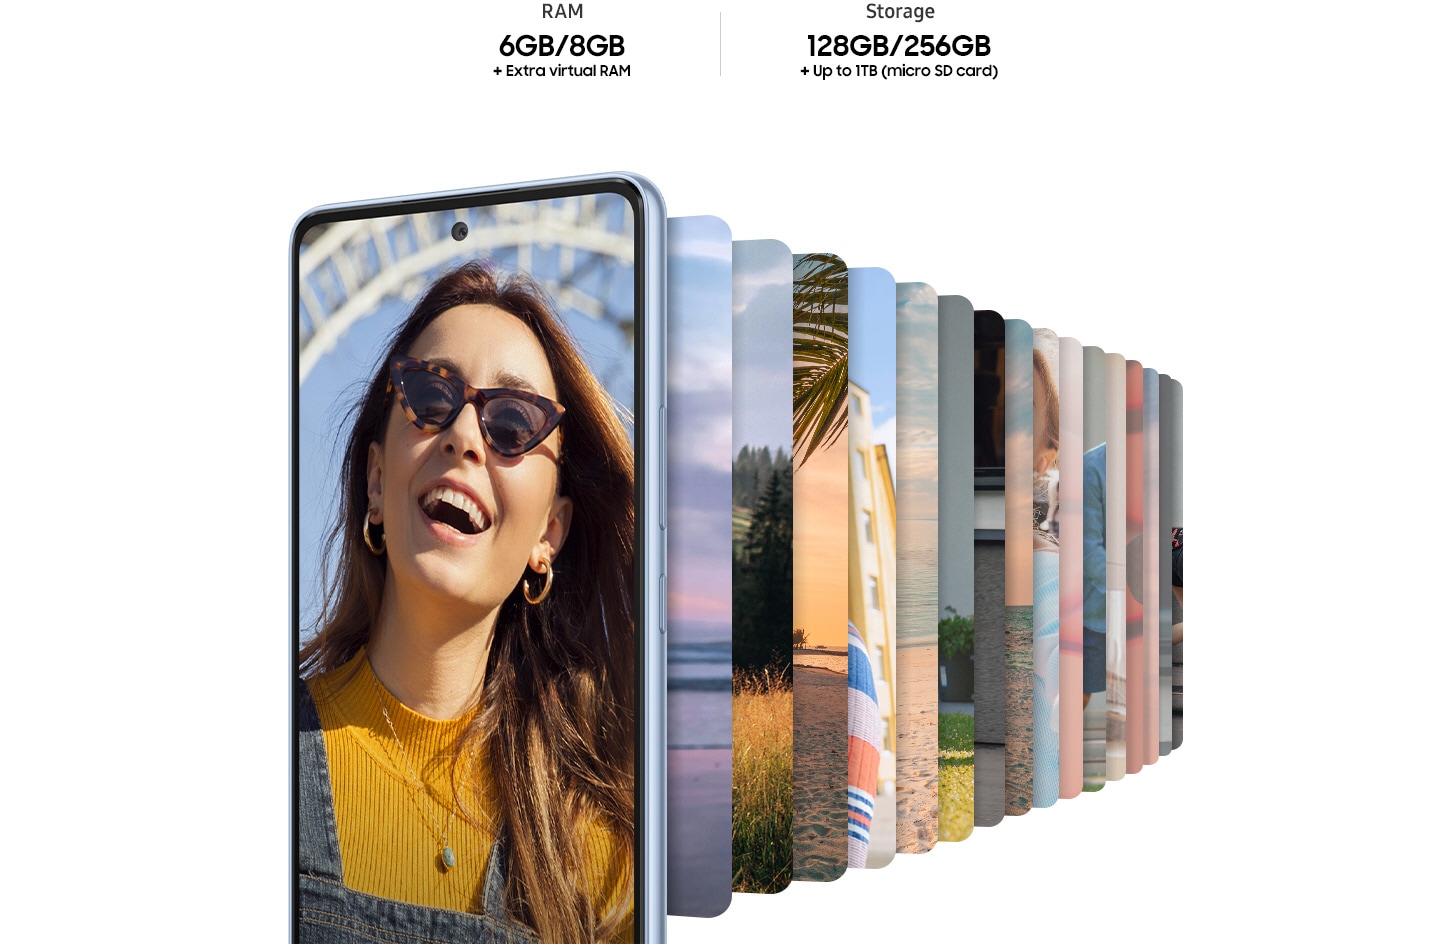 Galaxy A53 5G prikazan sprijeda na čijem zaslonu vidimo ženu sa sunčanim naočalama koja se smiješi. Iza pametnog telefona poredane su mnogobrojne slike u obliku pametnog telefona te prikazuju razne krajolike. Tekst prikazuje RAM 6 G/8 GB + dodatni virtualni RAM i memorija 128/256 GB + do 1 TB (Micro SD kartica).